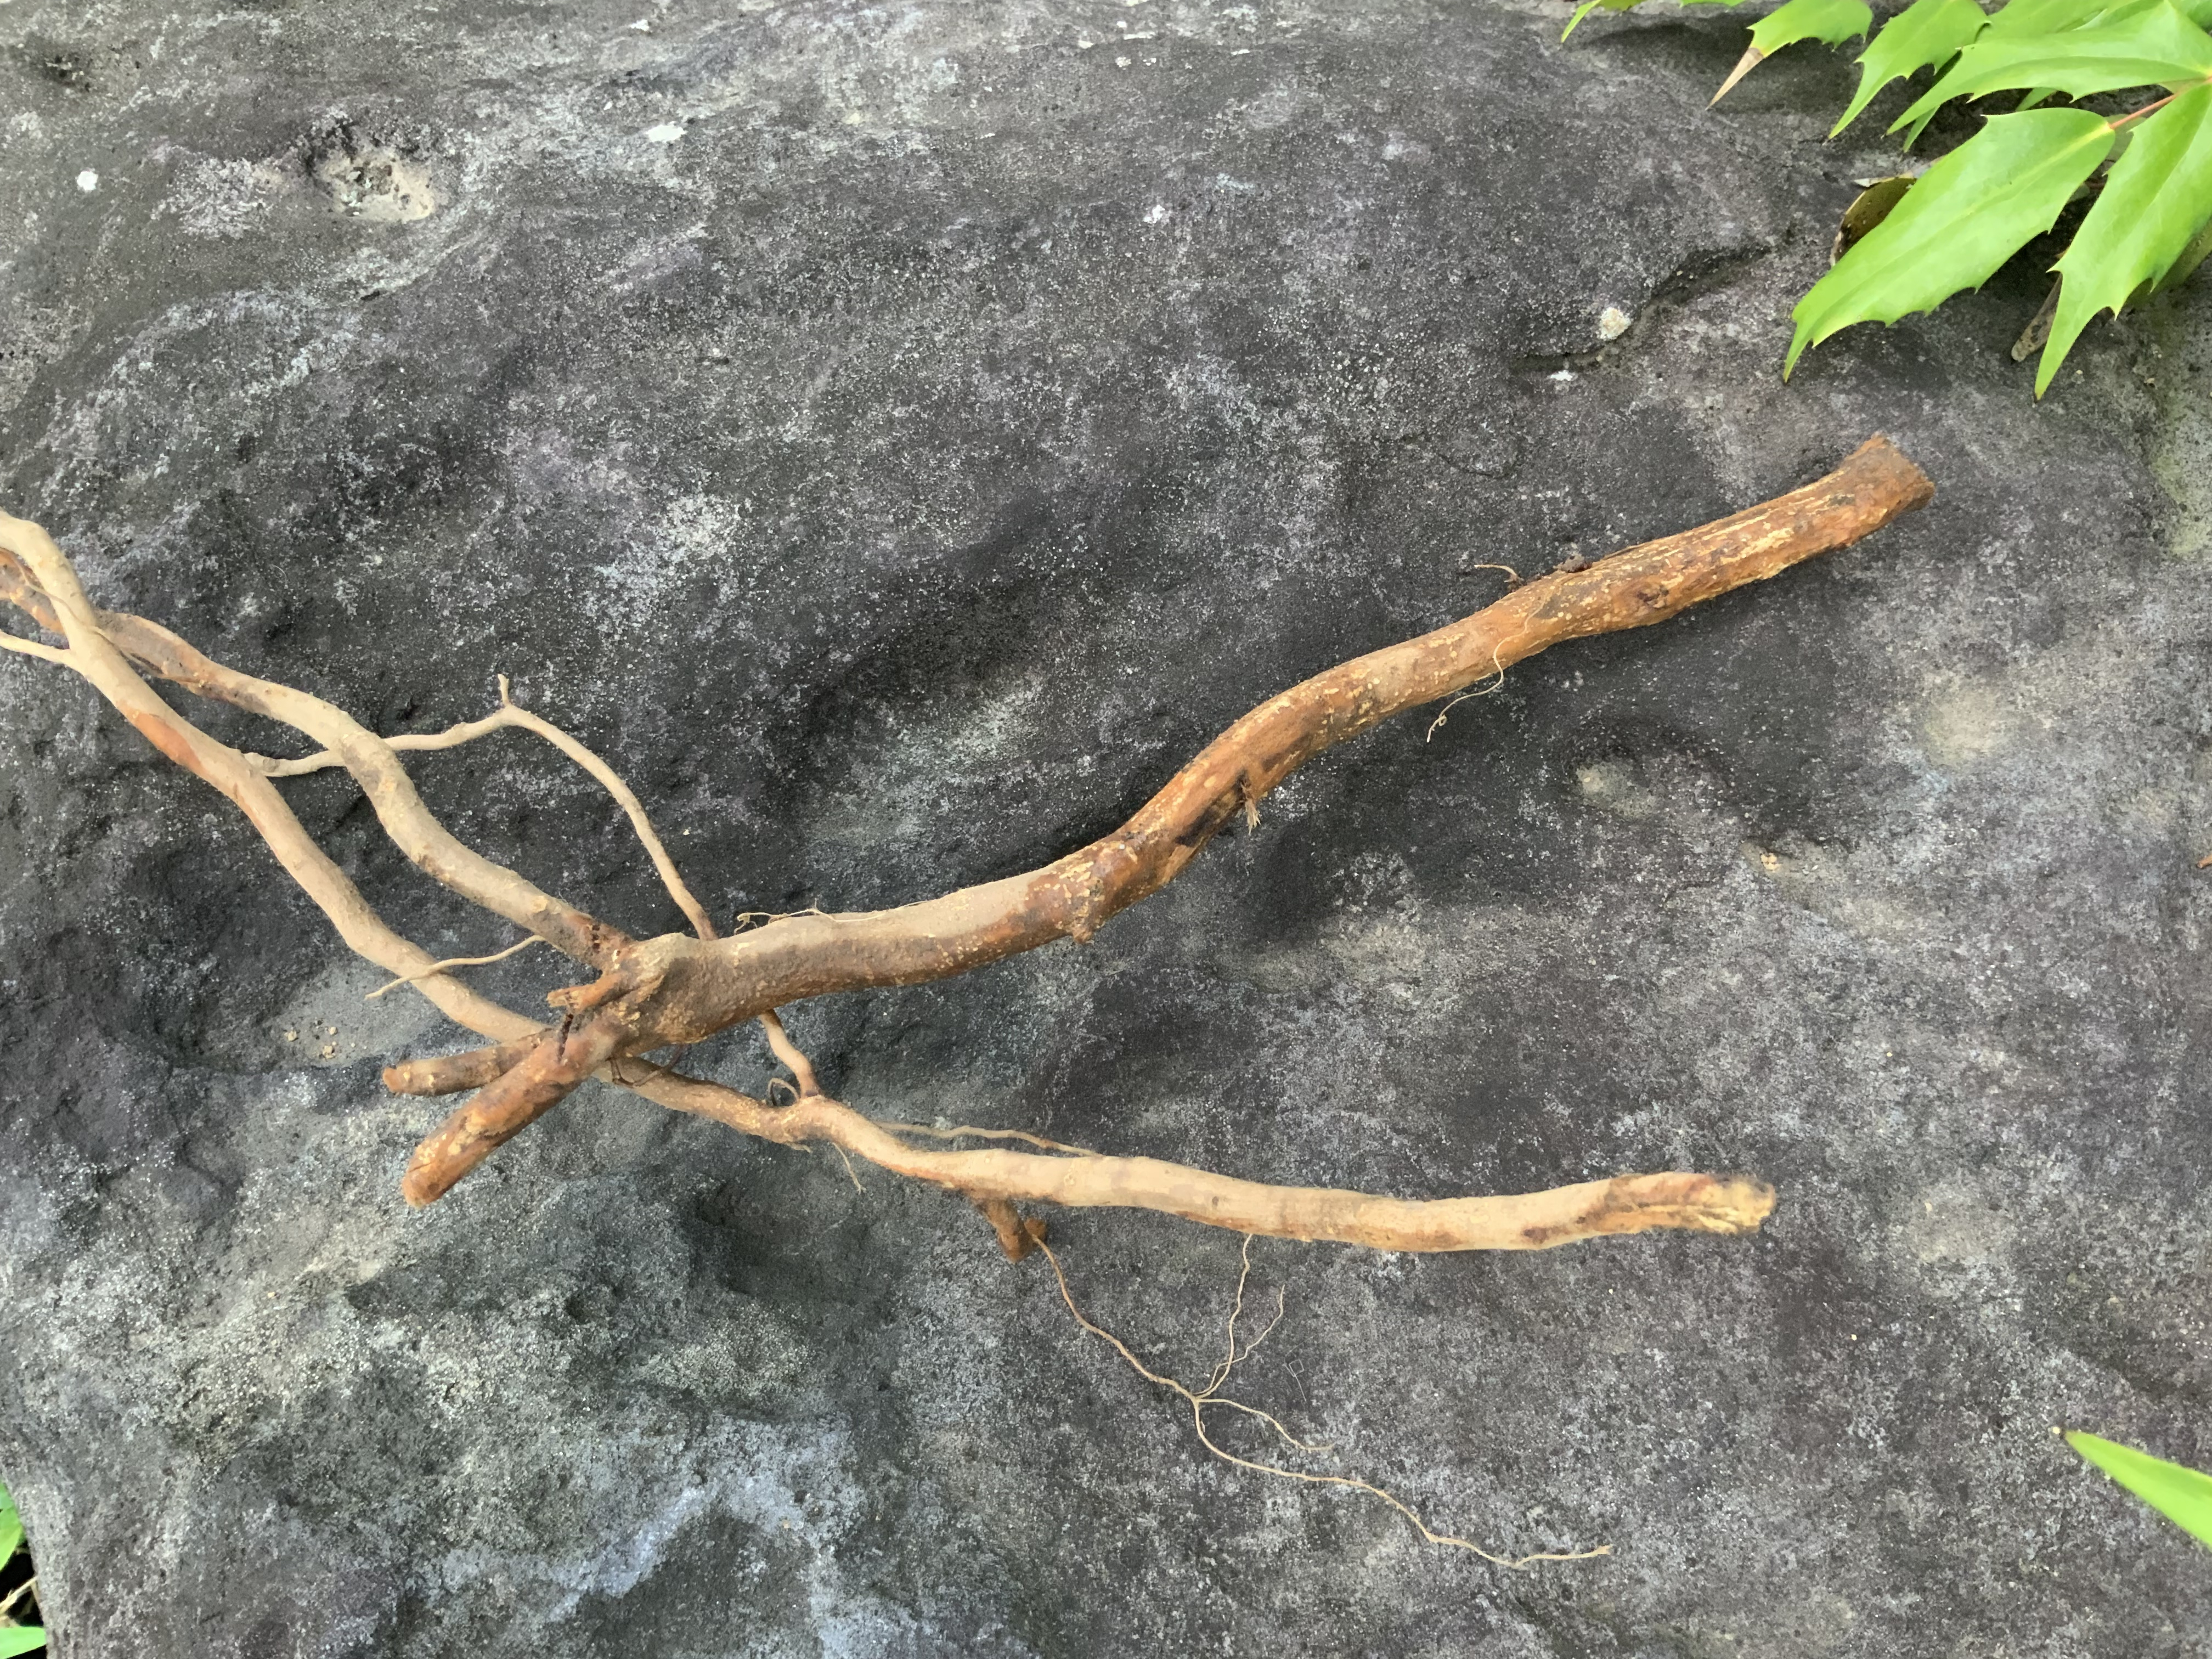 ザクロの根っこを取ってきました 熊本地震からの復興 ハーブ栽培 Bloguru